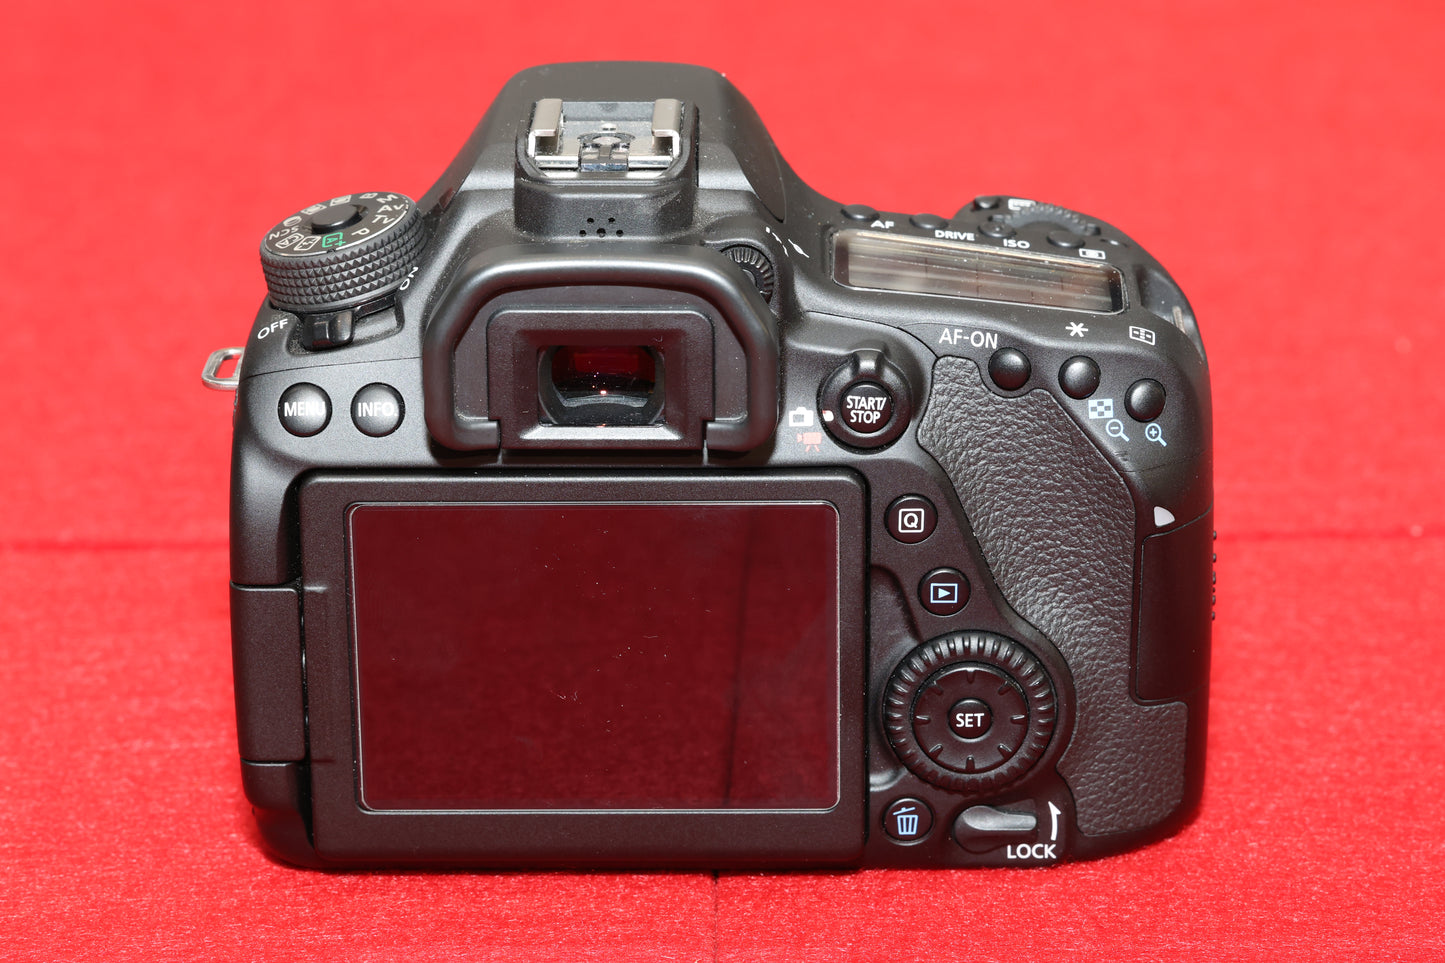 Gebrauchtware - Canon EOS 80D Spiegelreflexkamera